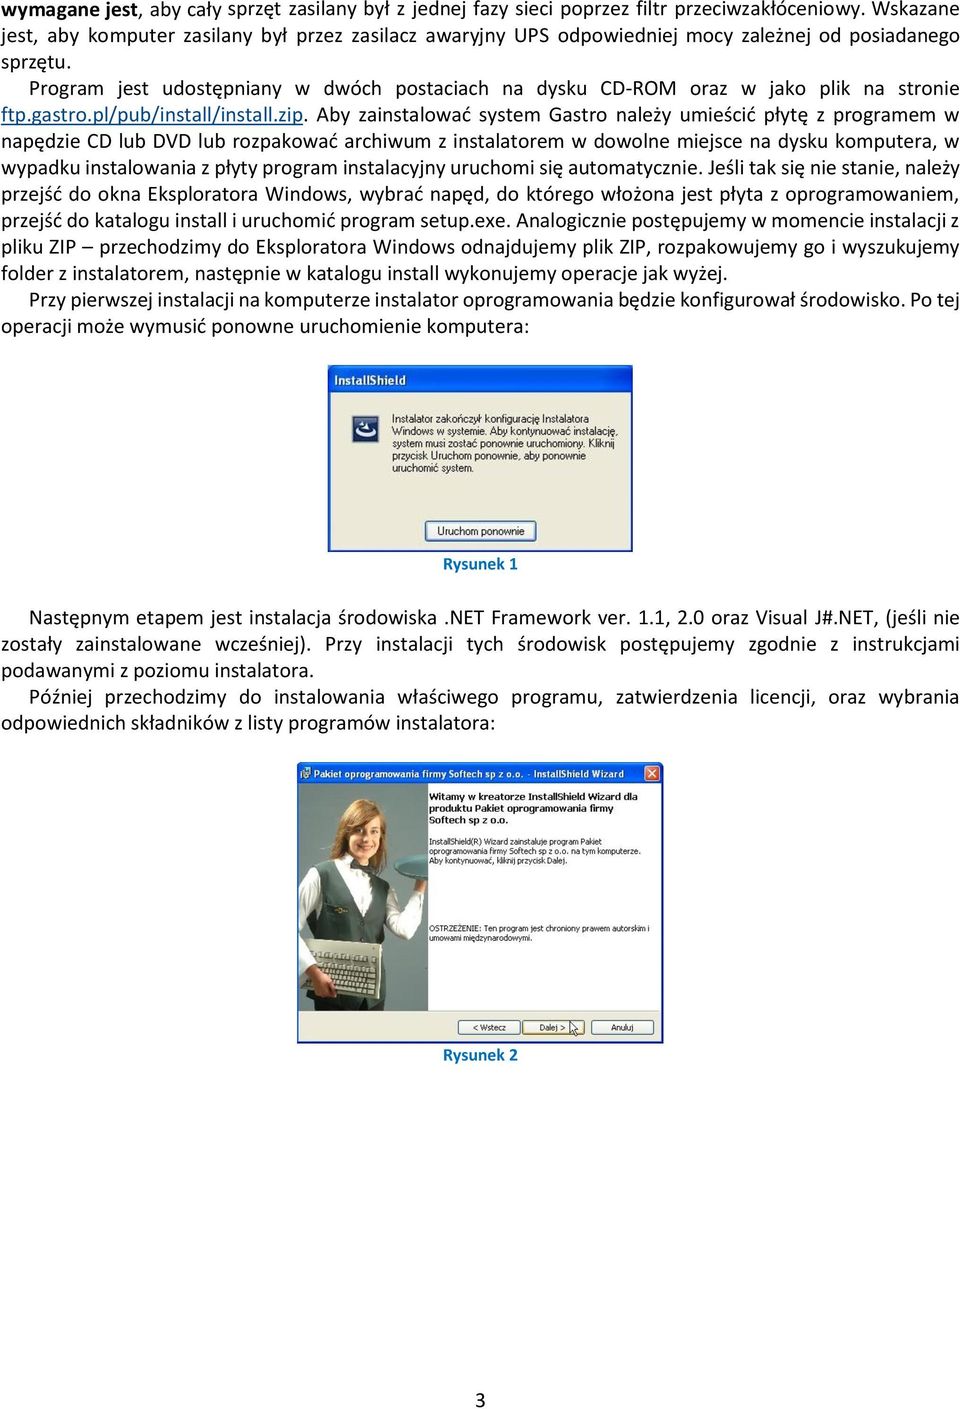 Program jest udostępniany w dwóch postaciach na dysku CD-ROM oraz w jako plik na stronie ftp.gastro.pl/pub/install/install.zip.